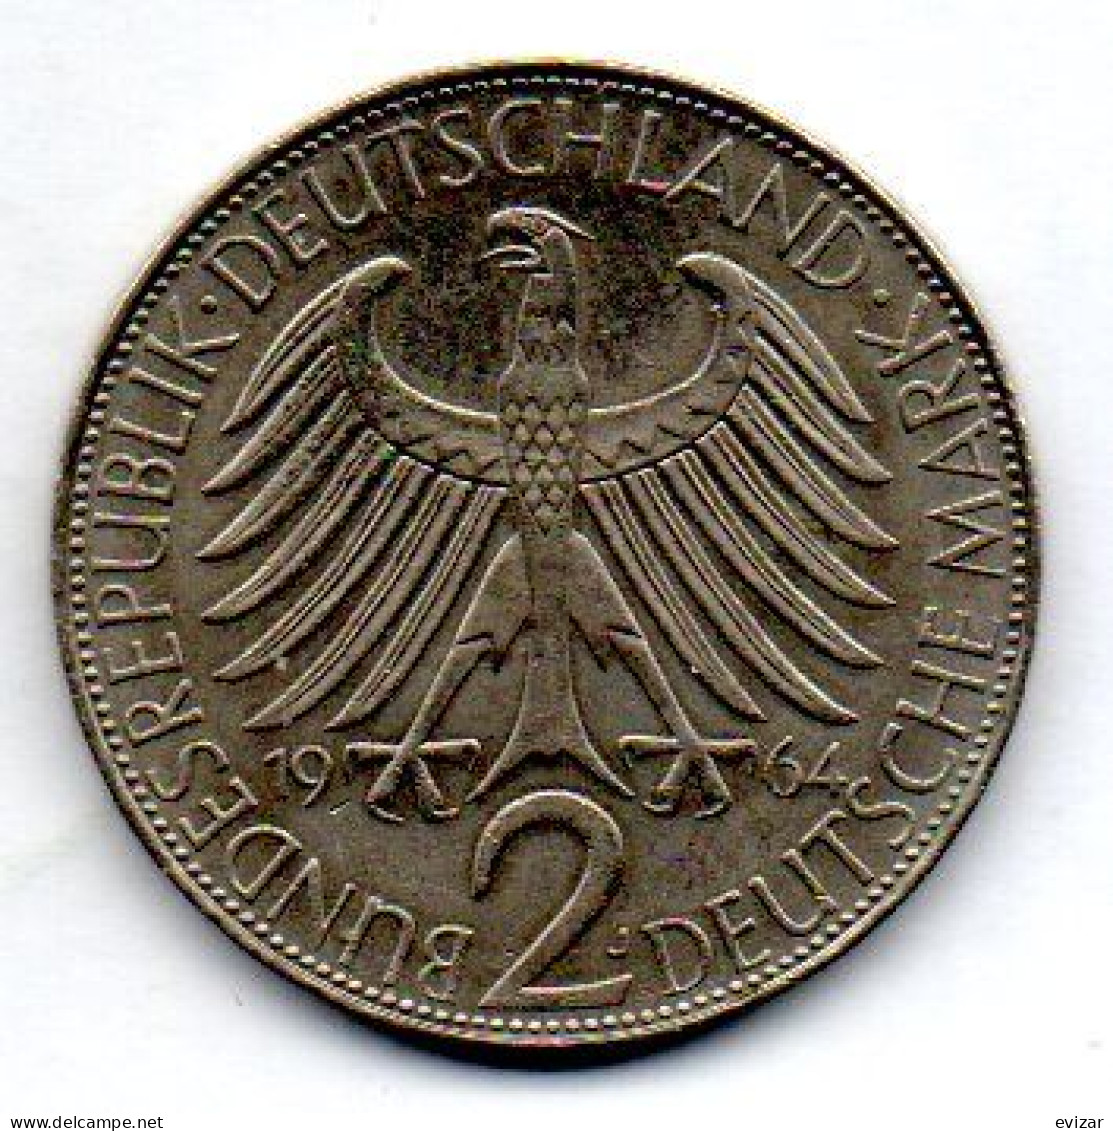 GERMANY - FEDERAL REPUBLIC, 2 Mark, Copper-Nickel, Year 1958-G, KM # 116 - 2 Marcos